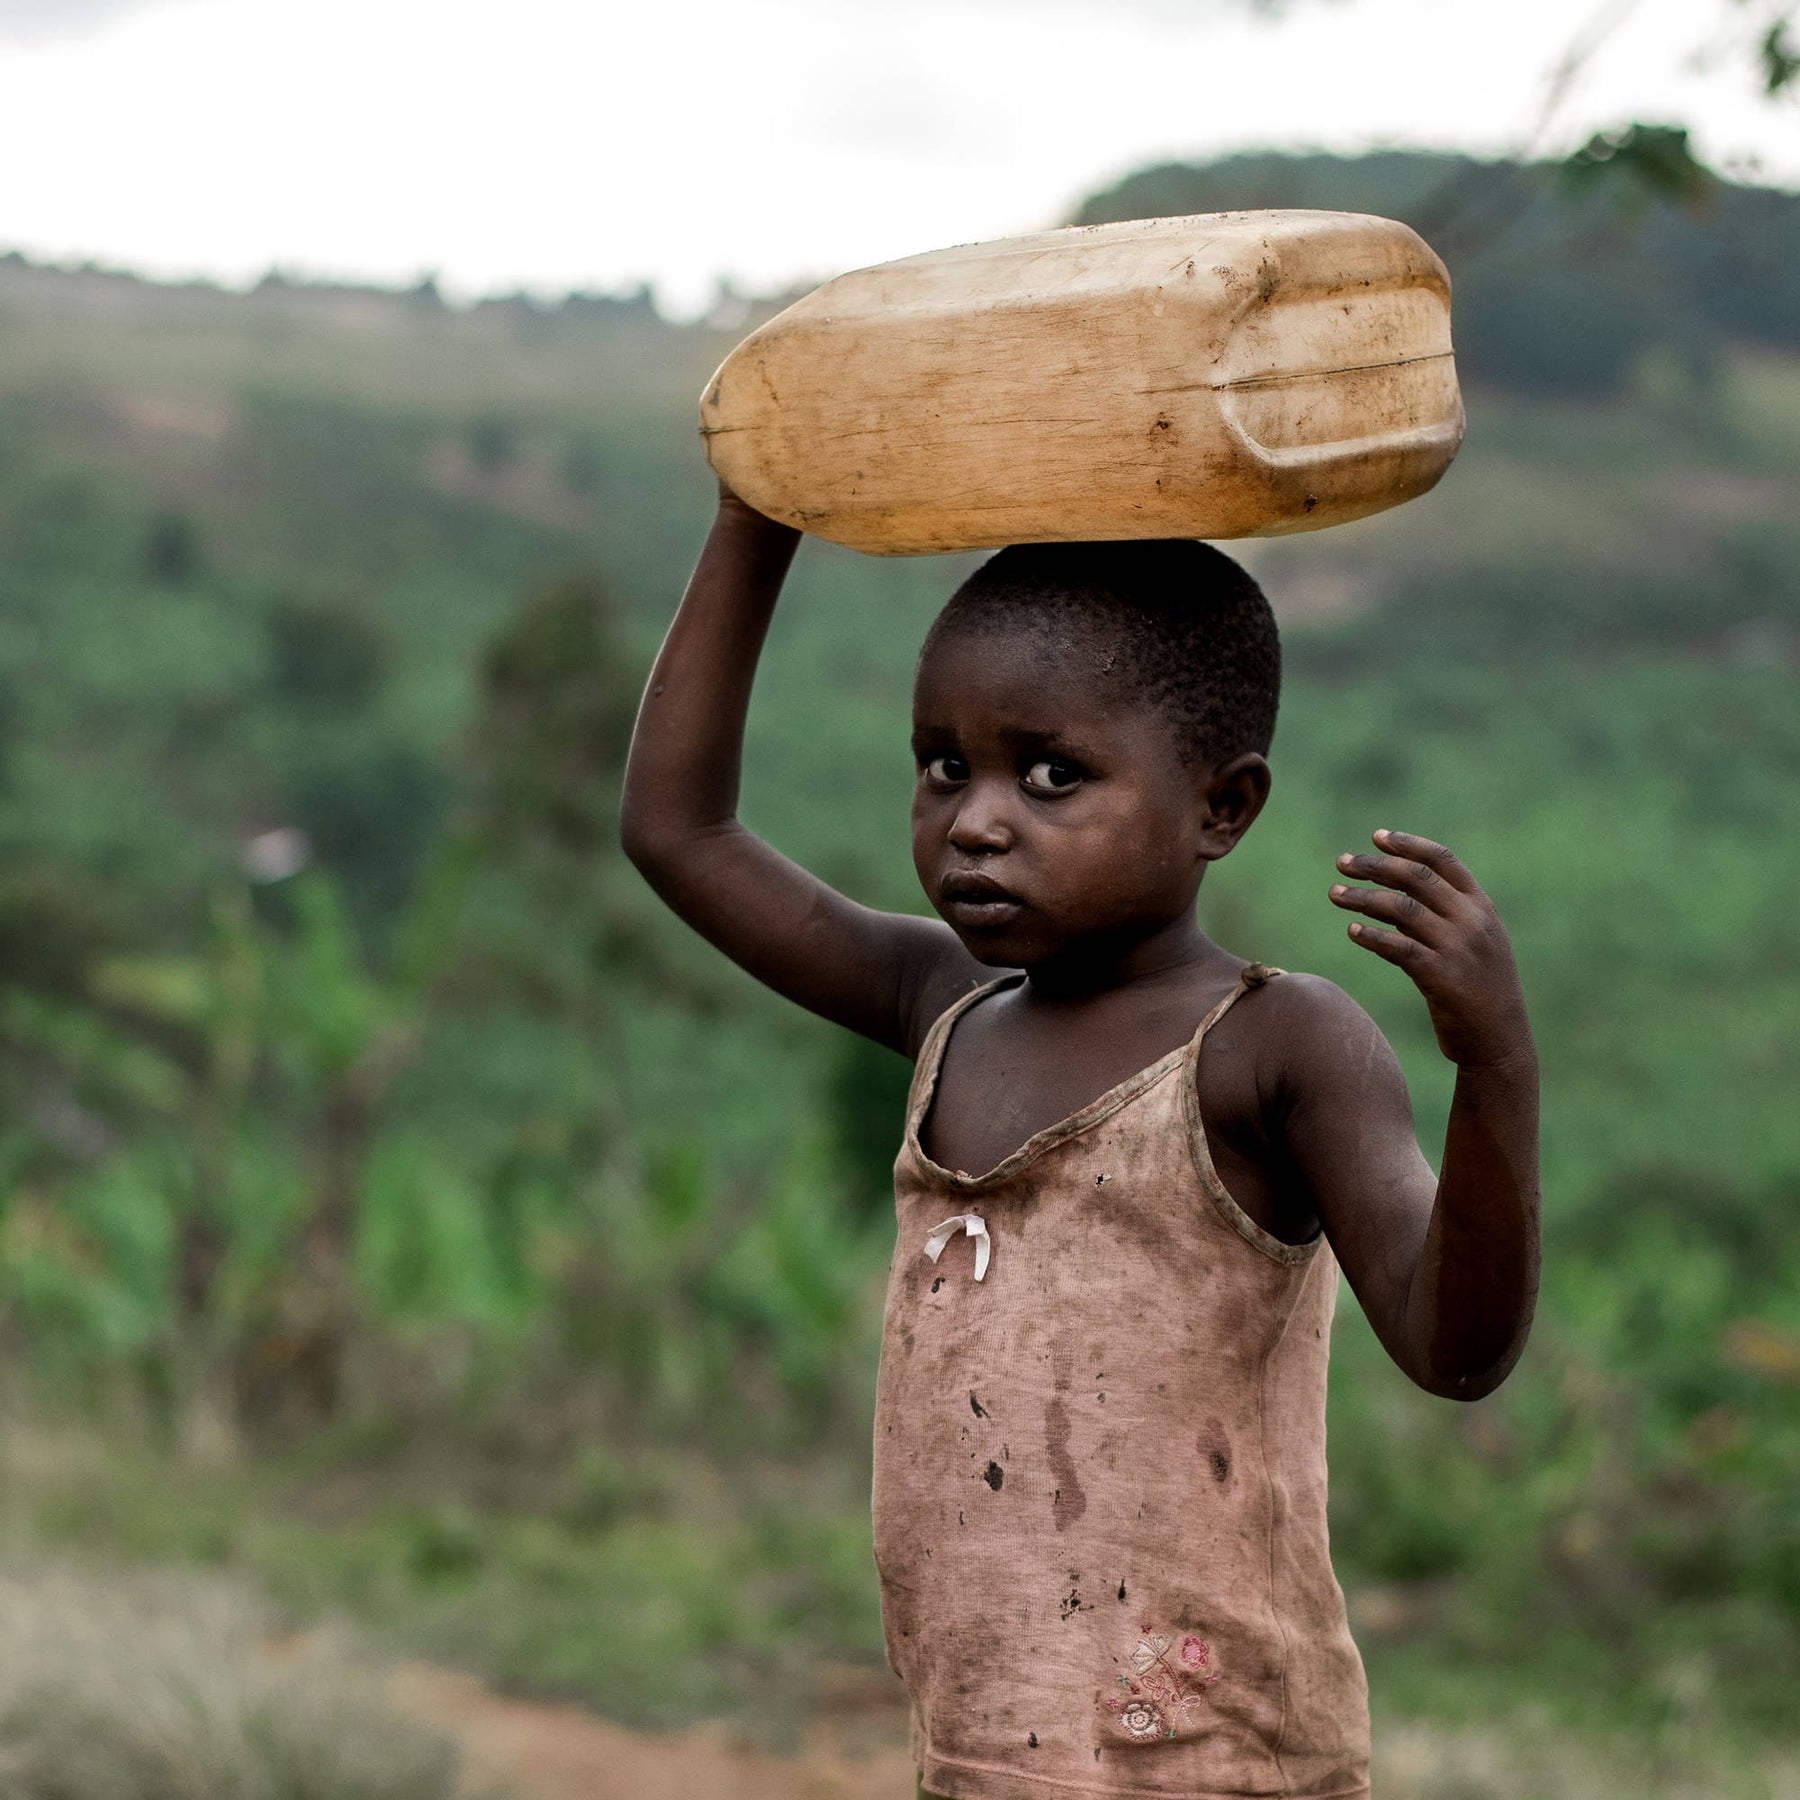 un enfant qui marche avec un jerrican d'eau en équilibre sur sa tête